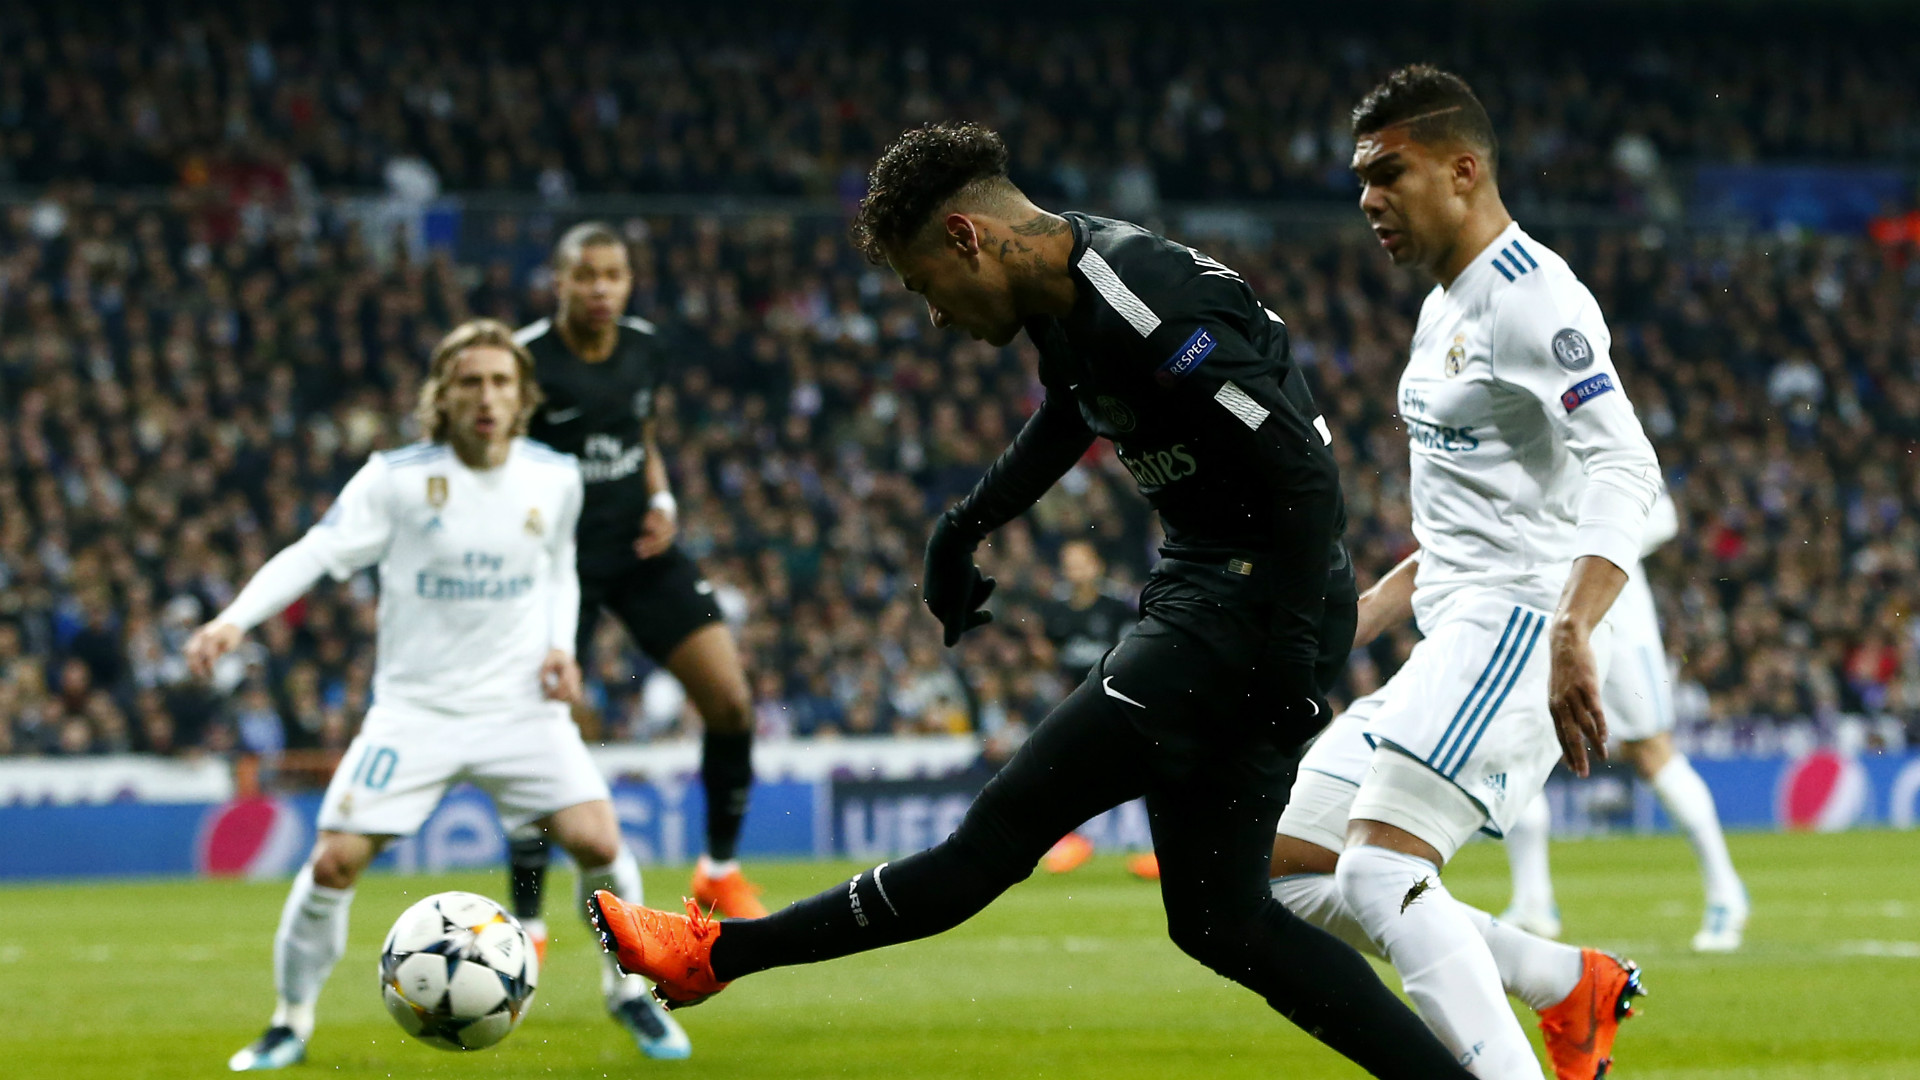 AO VIVO: Siga todos os detalhes de Real Madrid x PSG - Goal.com